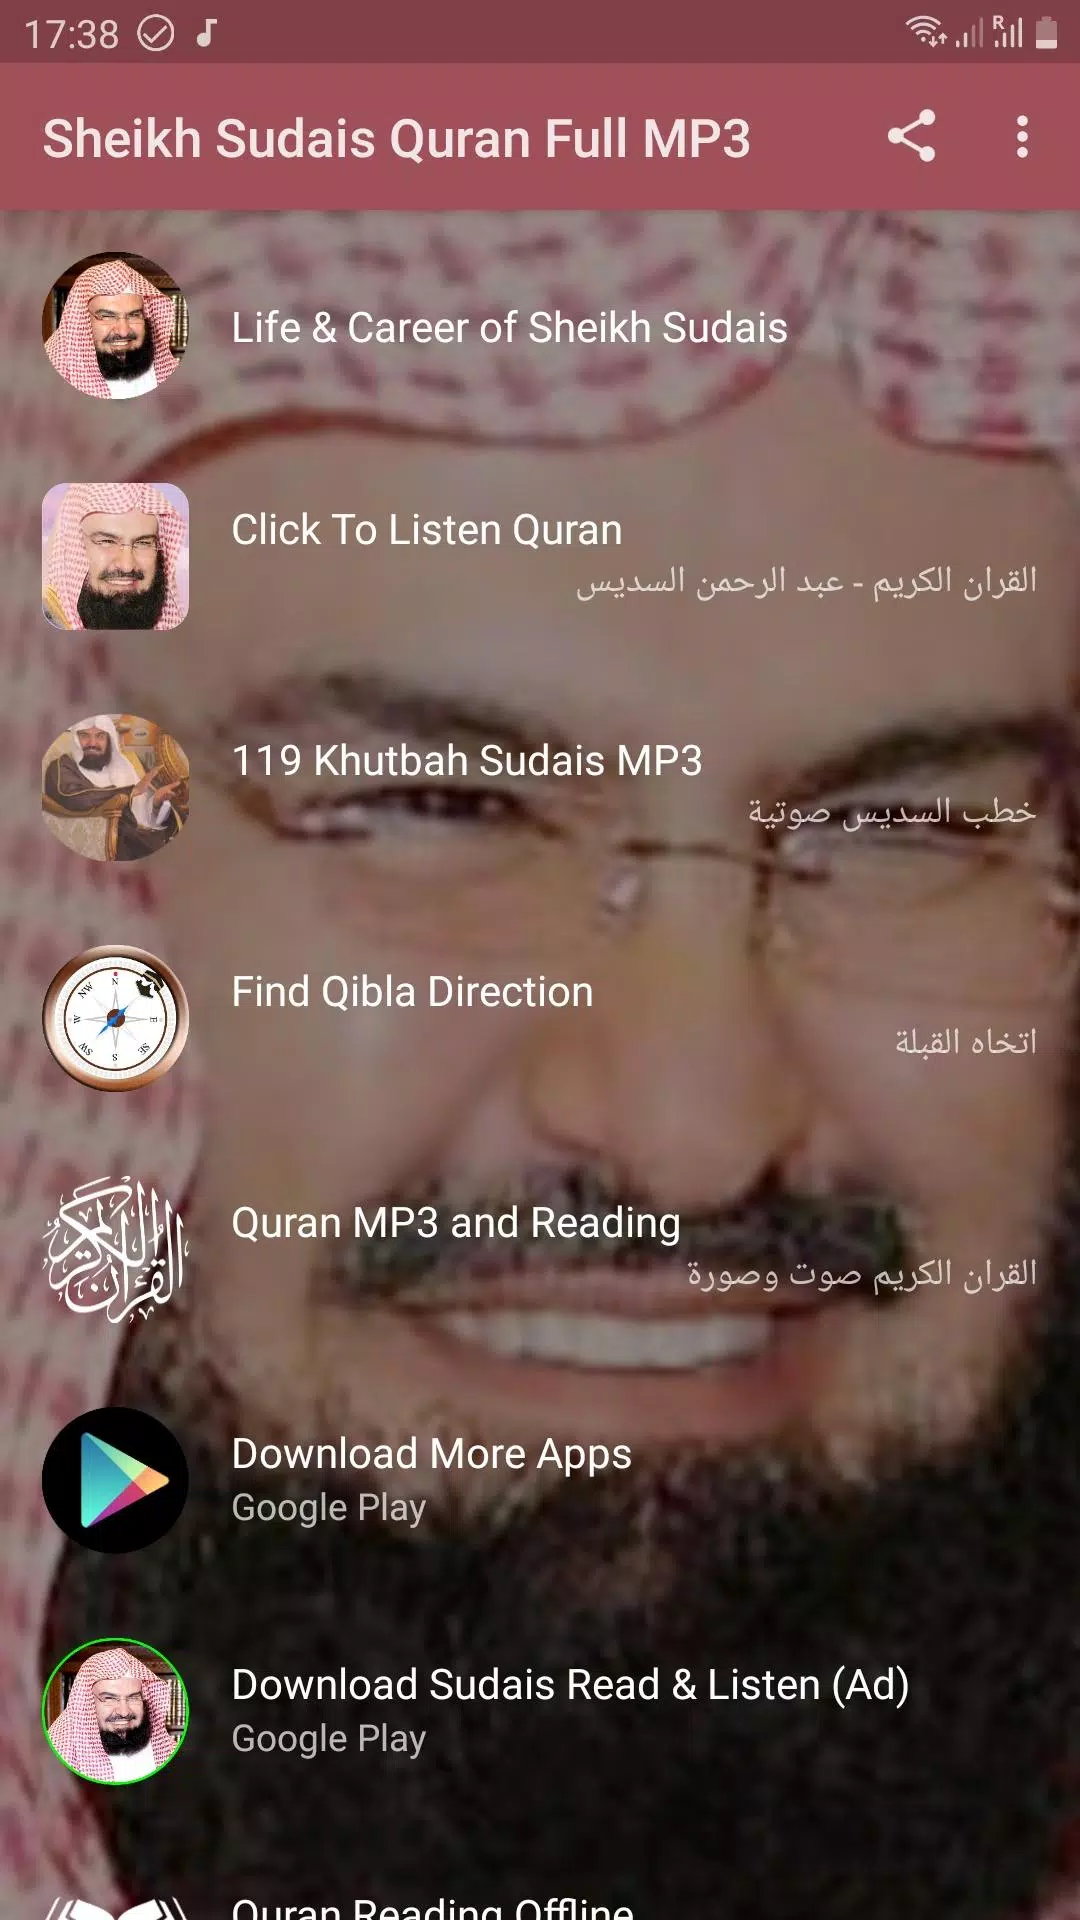 Cheikh Sudais Quran Full MP3 APK pour Android Télécharger